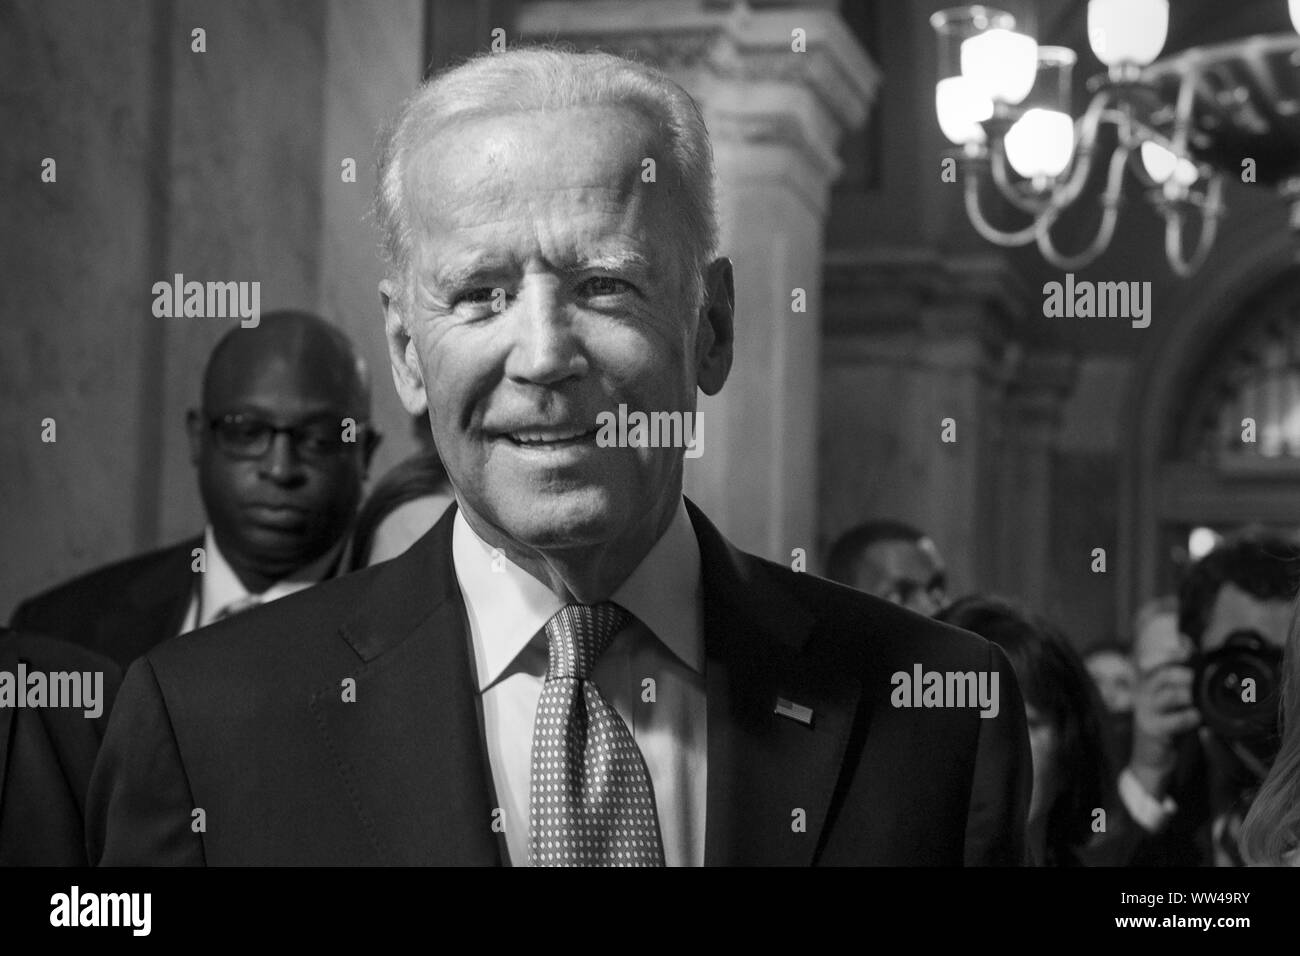 Le Vice-président américain Joe Biden en arrivant à la 58e Cérémonie d'investiture à Washington, D.C., 20 janvier 2017. Banque D'Images